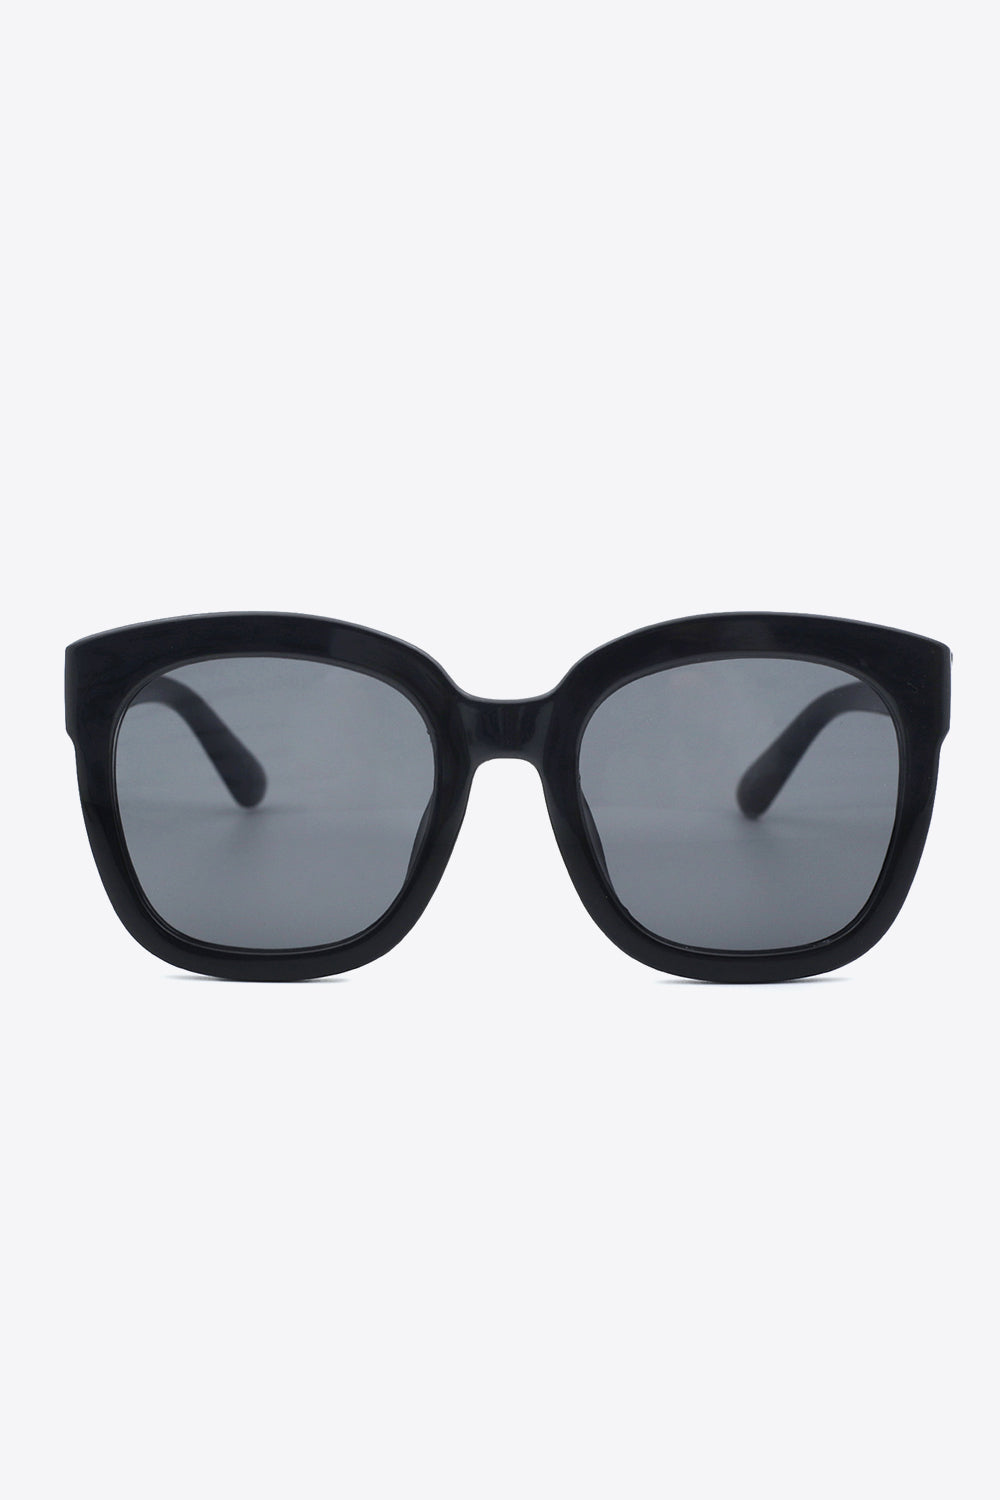 Polycarbonate Frame Square Sunglasses One Size Sunglasses by Vim&Vigor | Vim&Vigor Boutique